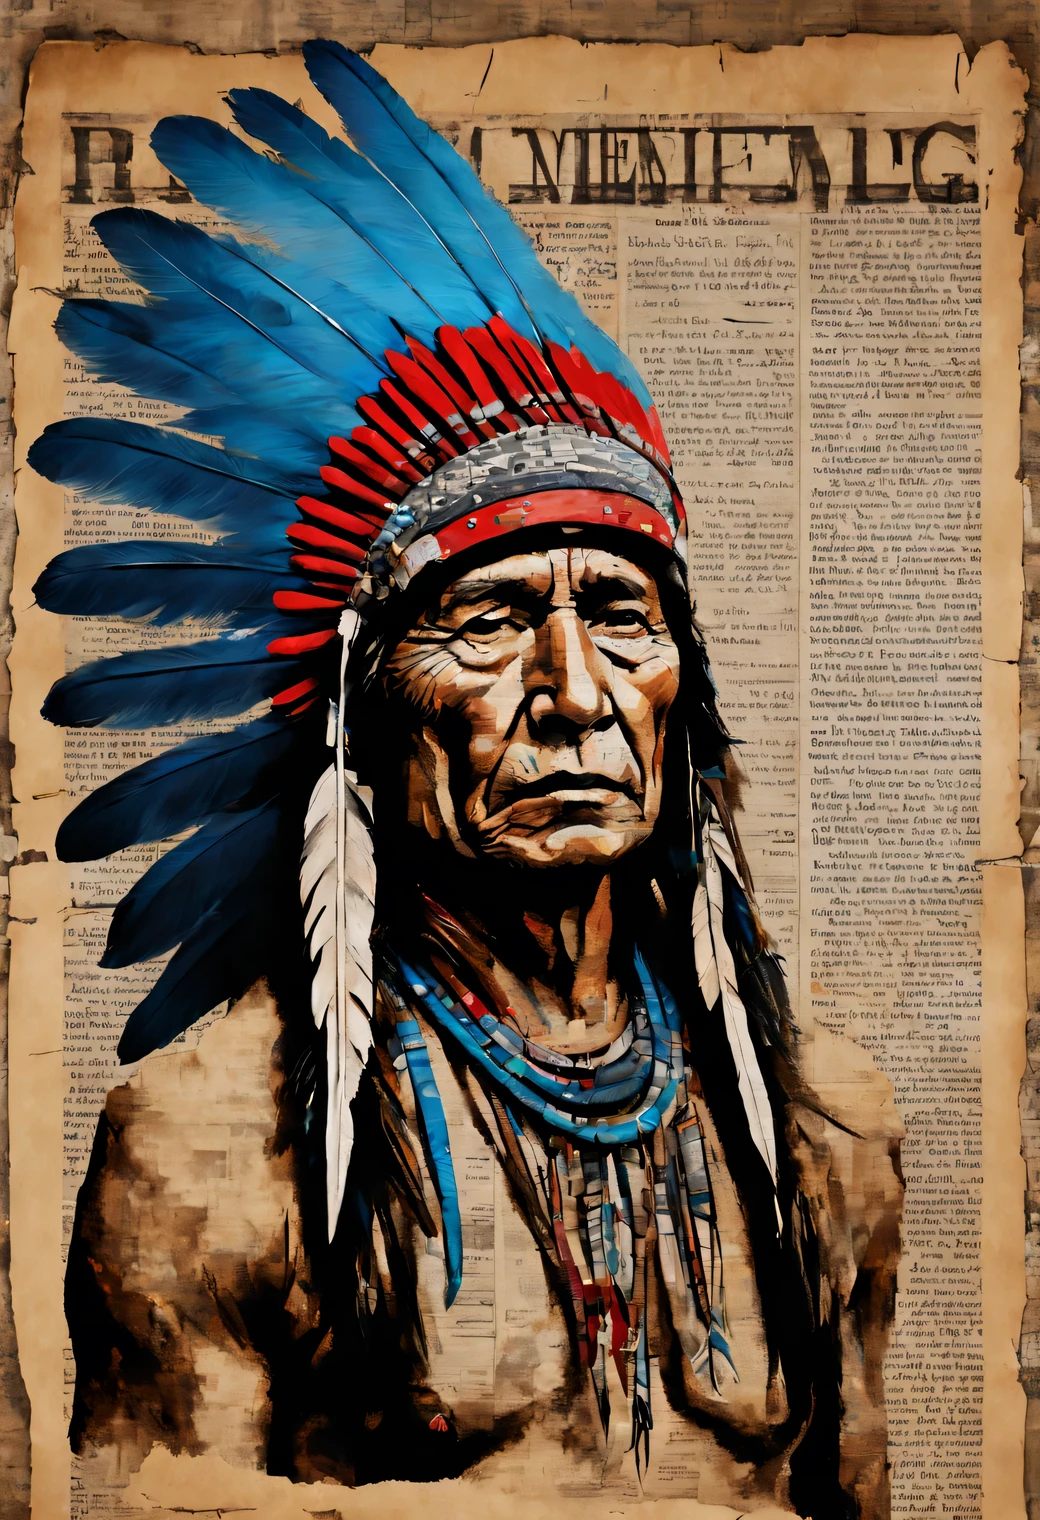 新聞紙に描く芸術., 古い新聞紙に描いたアクリル画, 古い新聞の上に描かれた青い羽のついた頭飾りをつけた赤毛のネイティブアメリカンの男性の肖像画, 高解像度